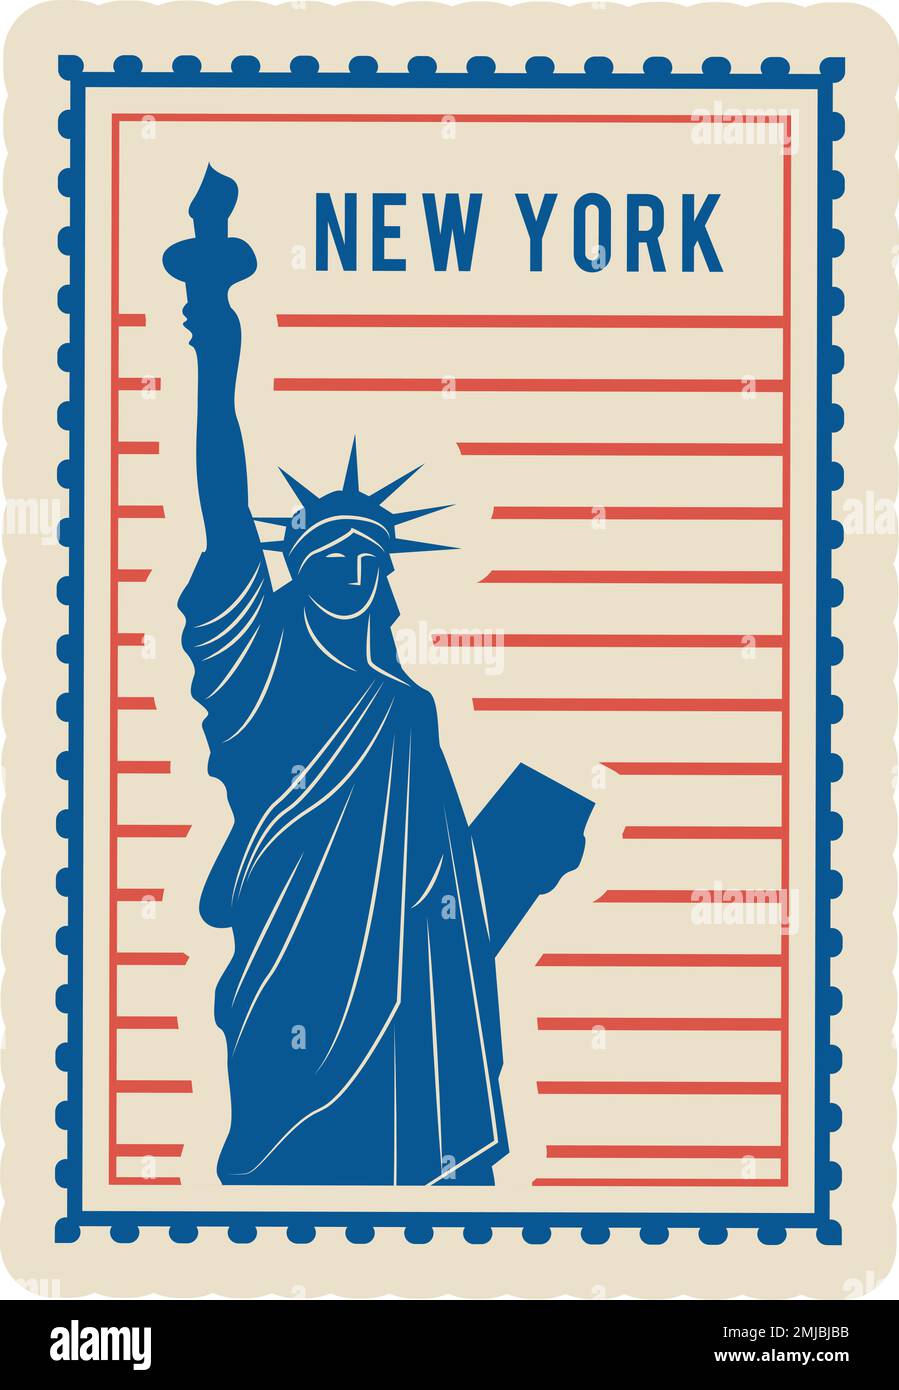 New York postmark. Retro rectangular mail label Stock Vector